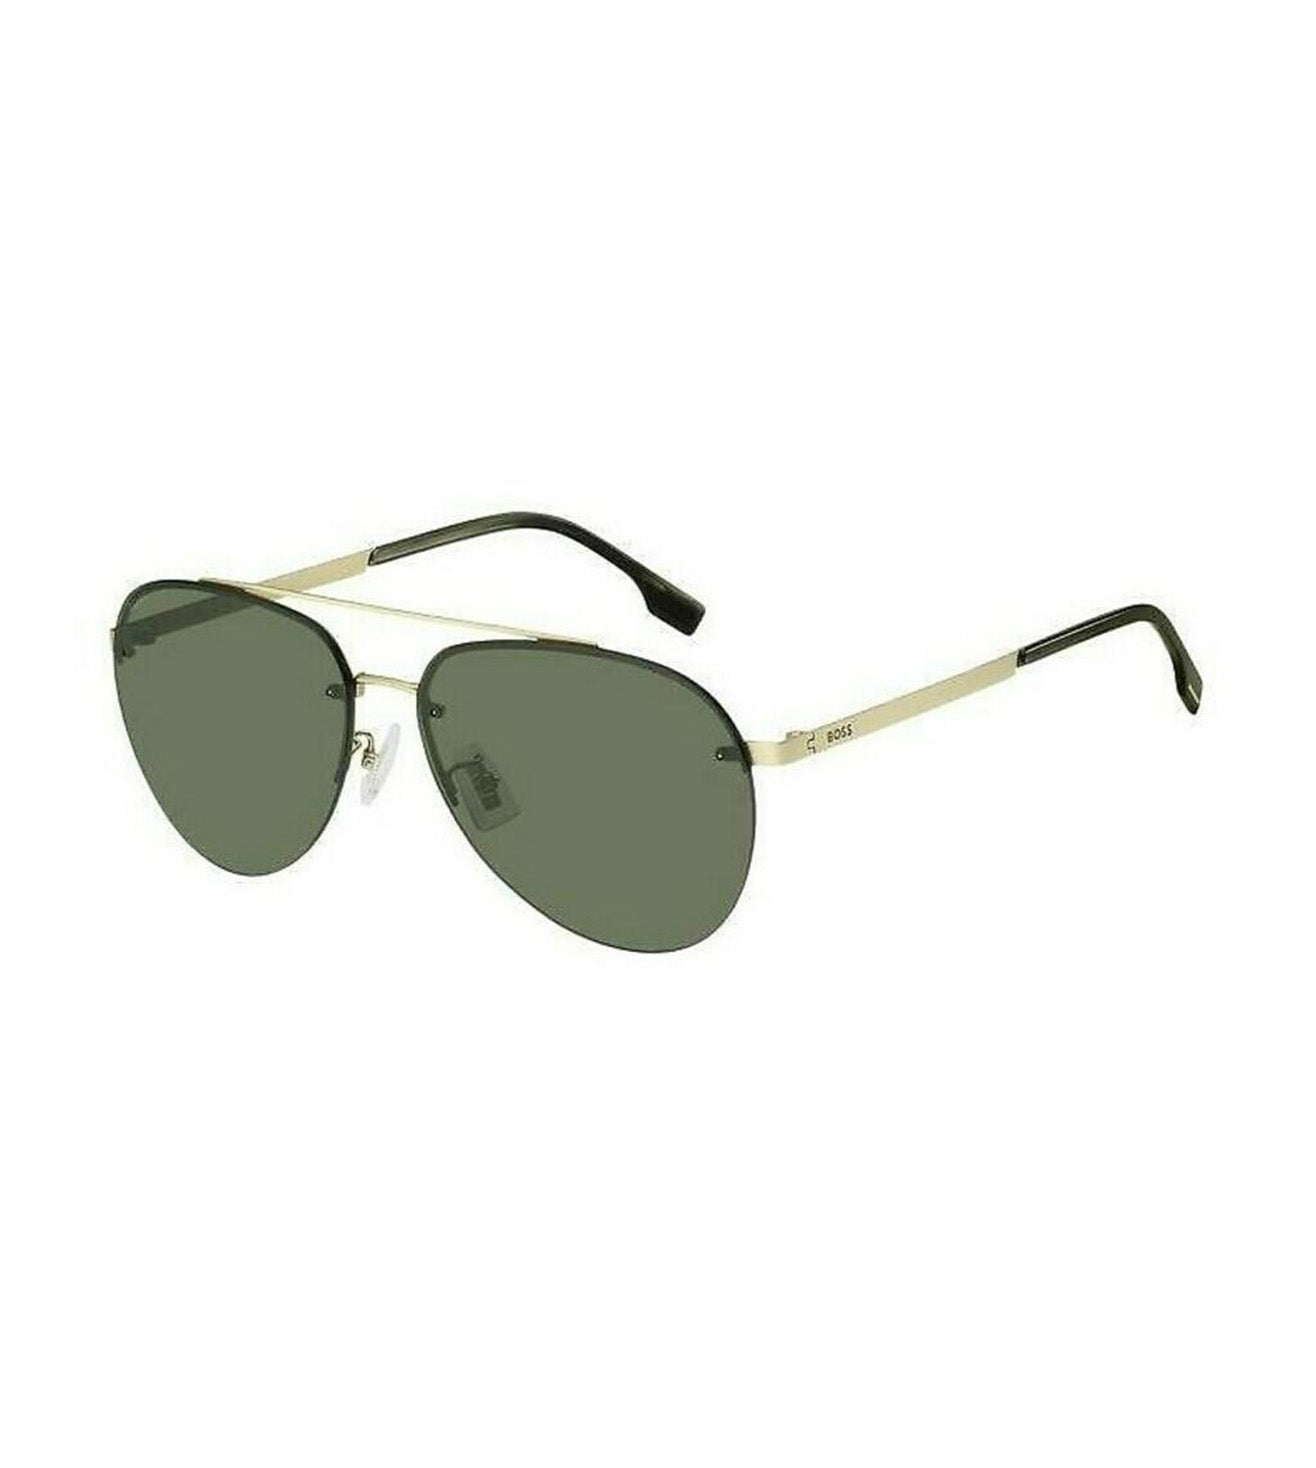 Hugo Boss Men's Green Aviator Sunglasses